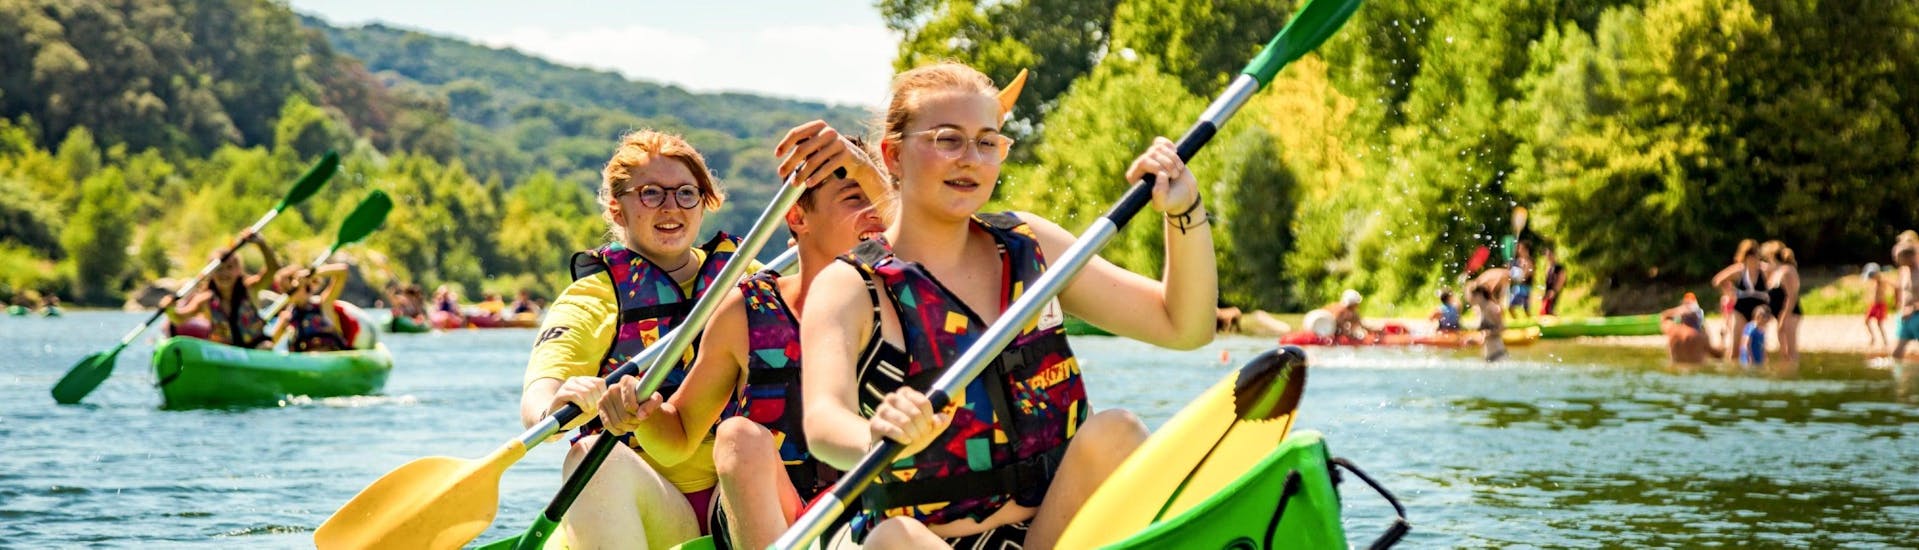 Drei Freunde nutzen ihre 8 km lange Kanutour am Pont du Gard mit Kayak Vert, um auf dem Gardon zu paddeln und sich zu amüsieren.